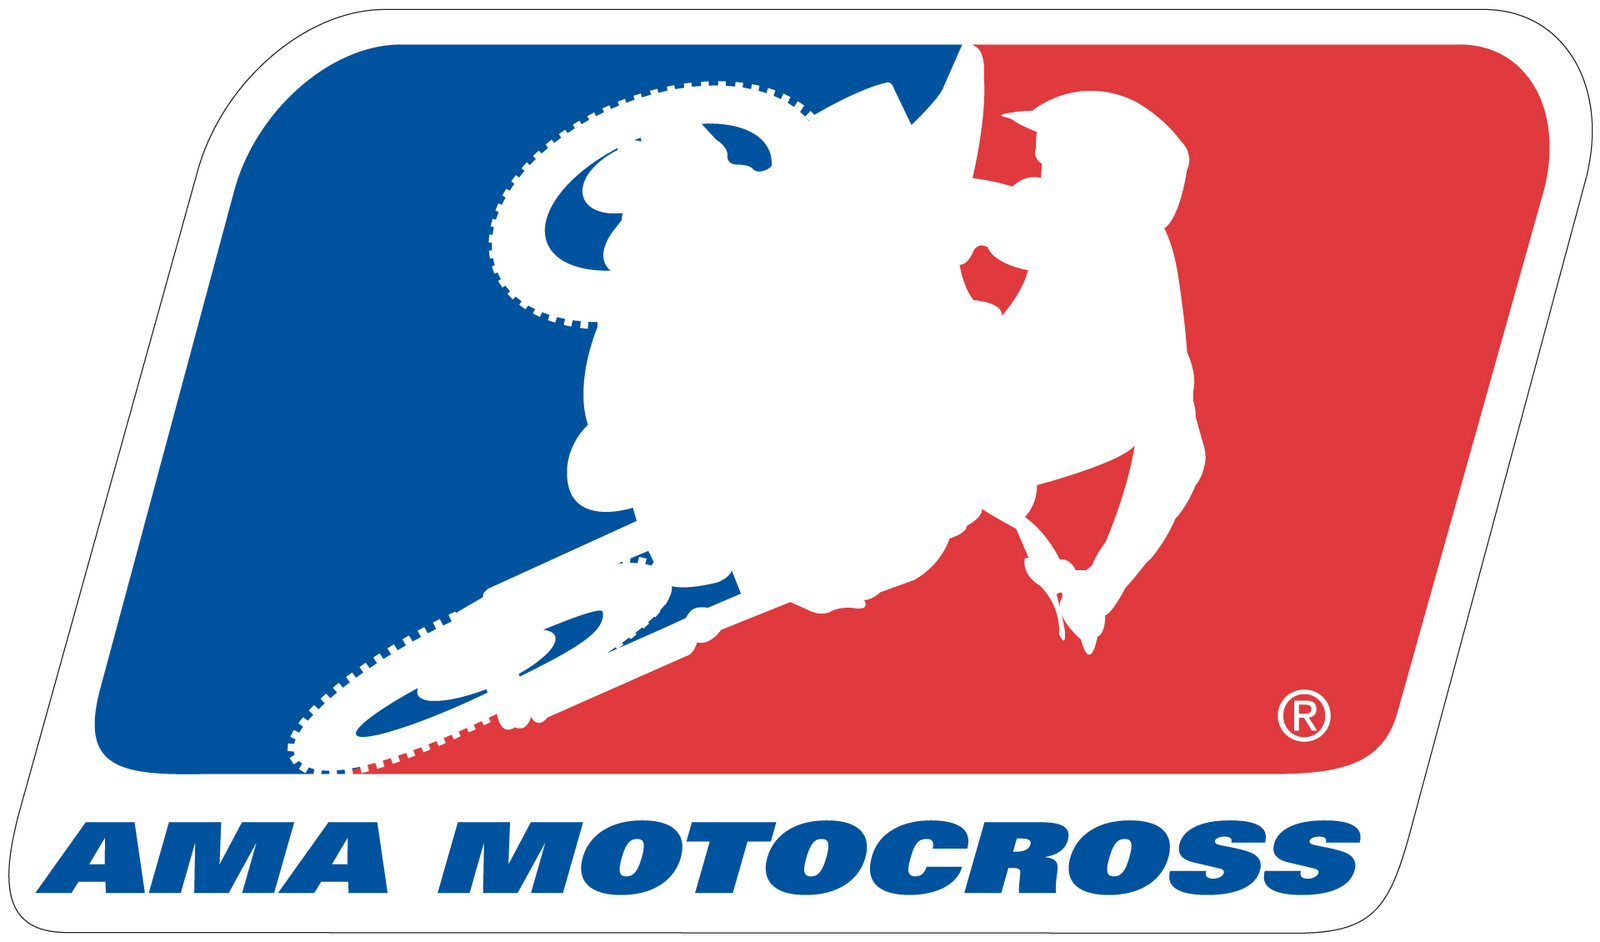 Motocross Logos Wallpaper